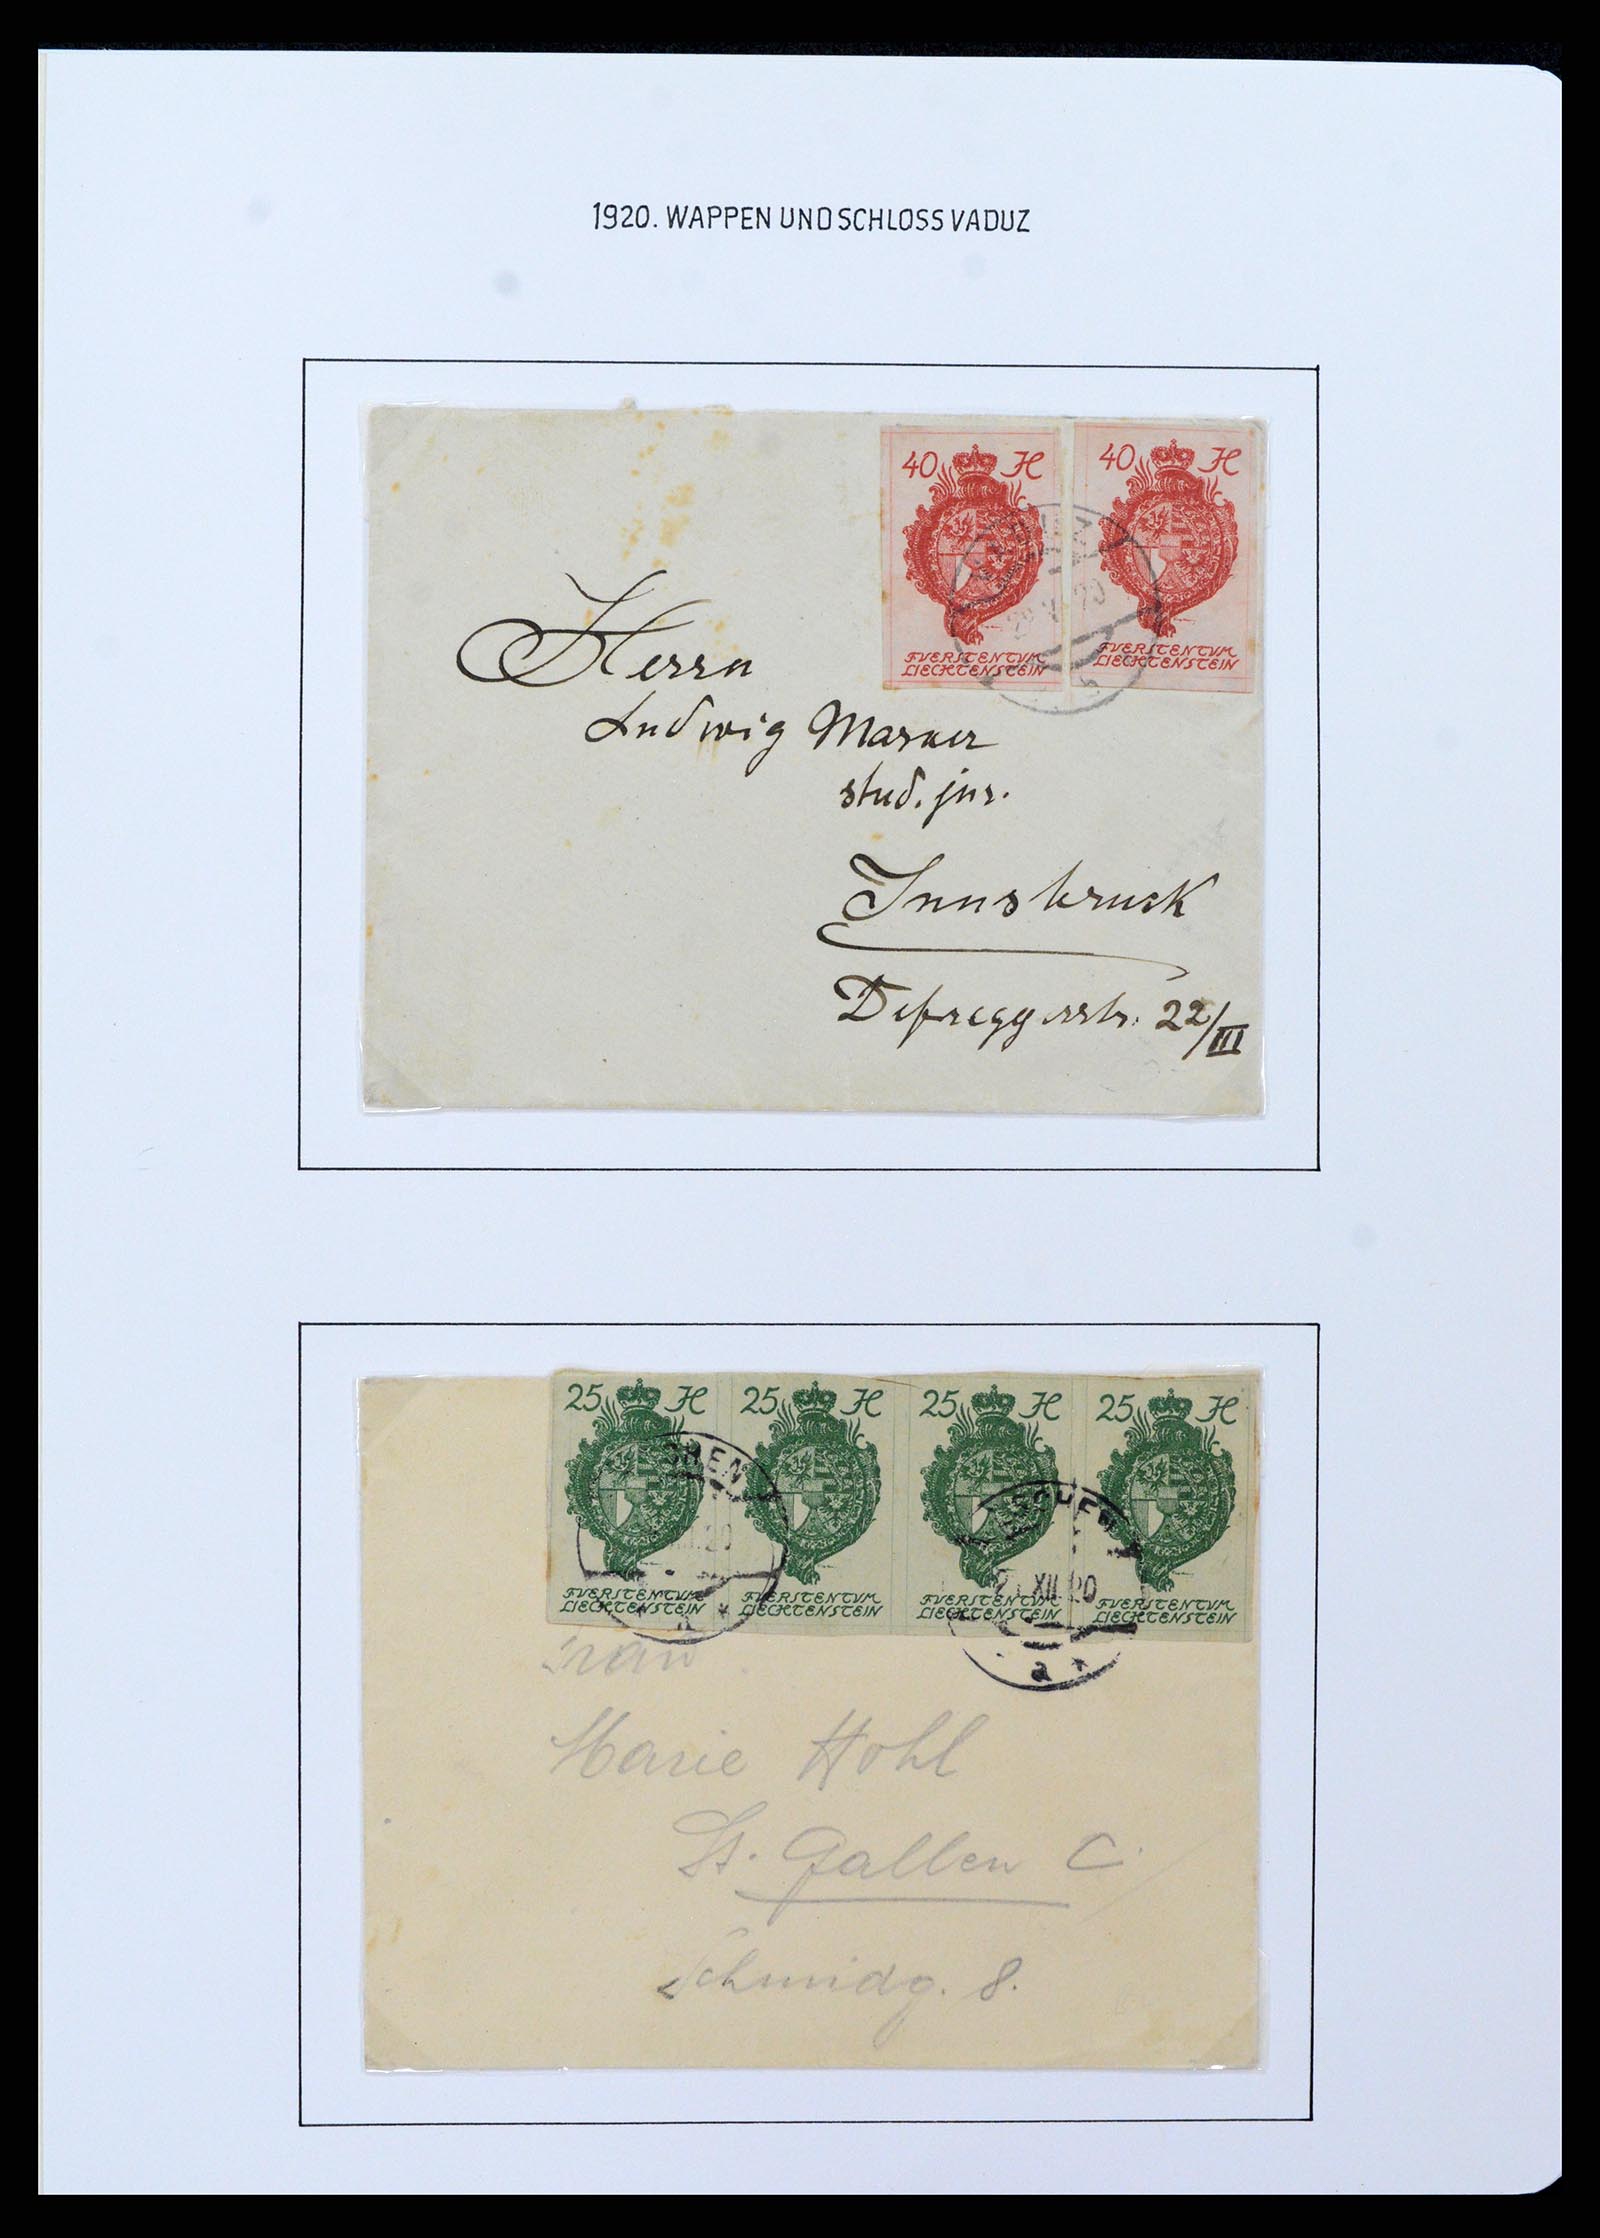 37150 0065 - Stamp collection 37150 Liechtenstein supercollection 1912-1962.